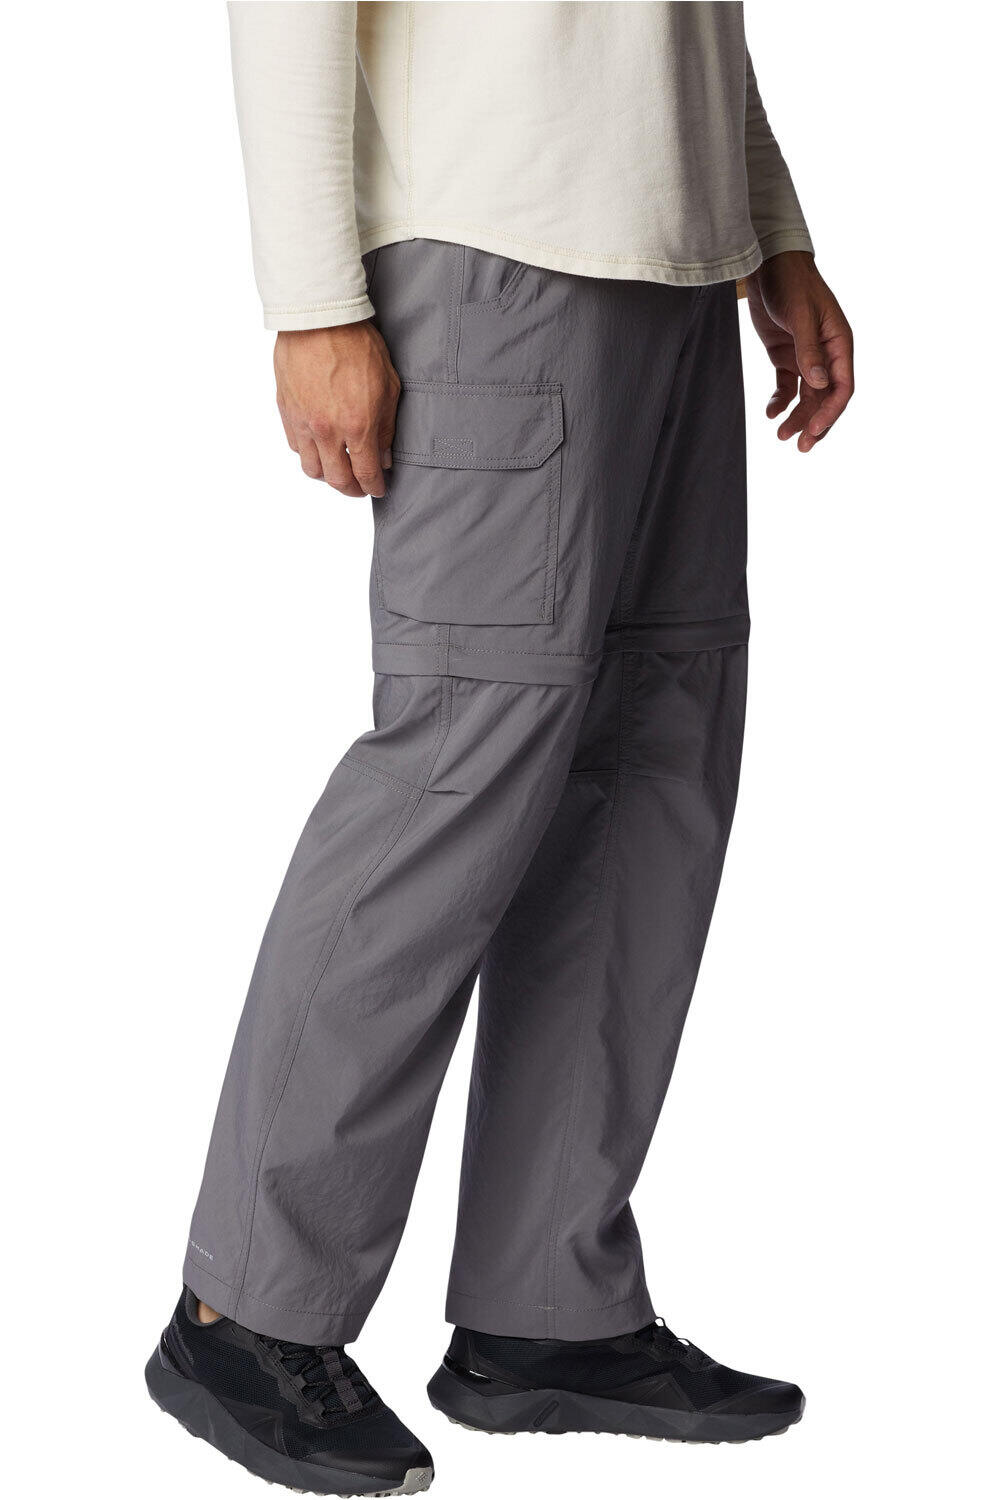 Columbia pantalón montaña hombre Silver Ridge Utility Convertible Pant 03